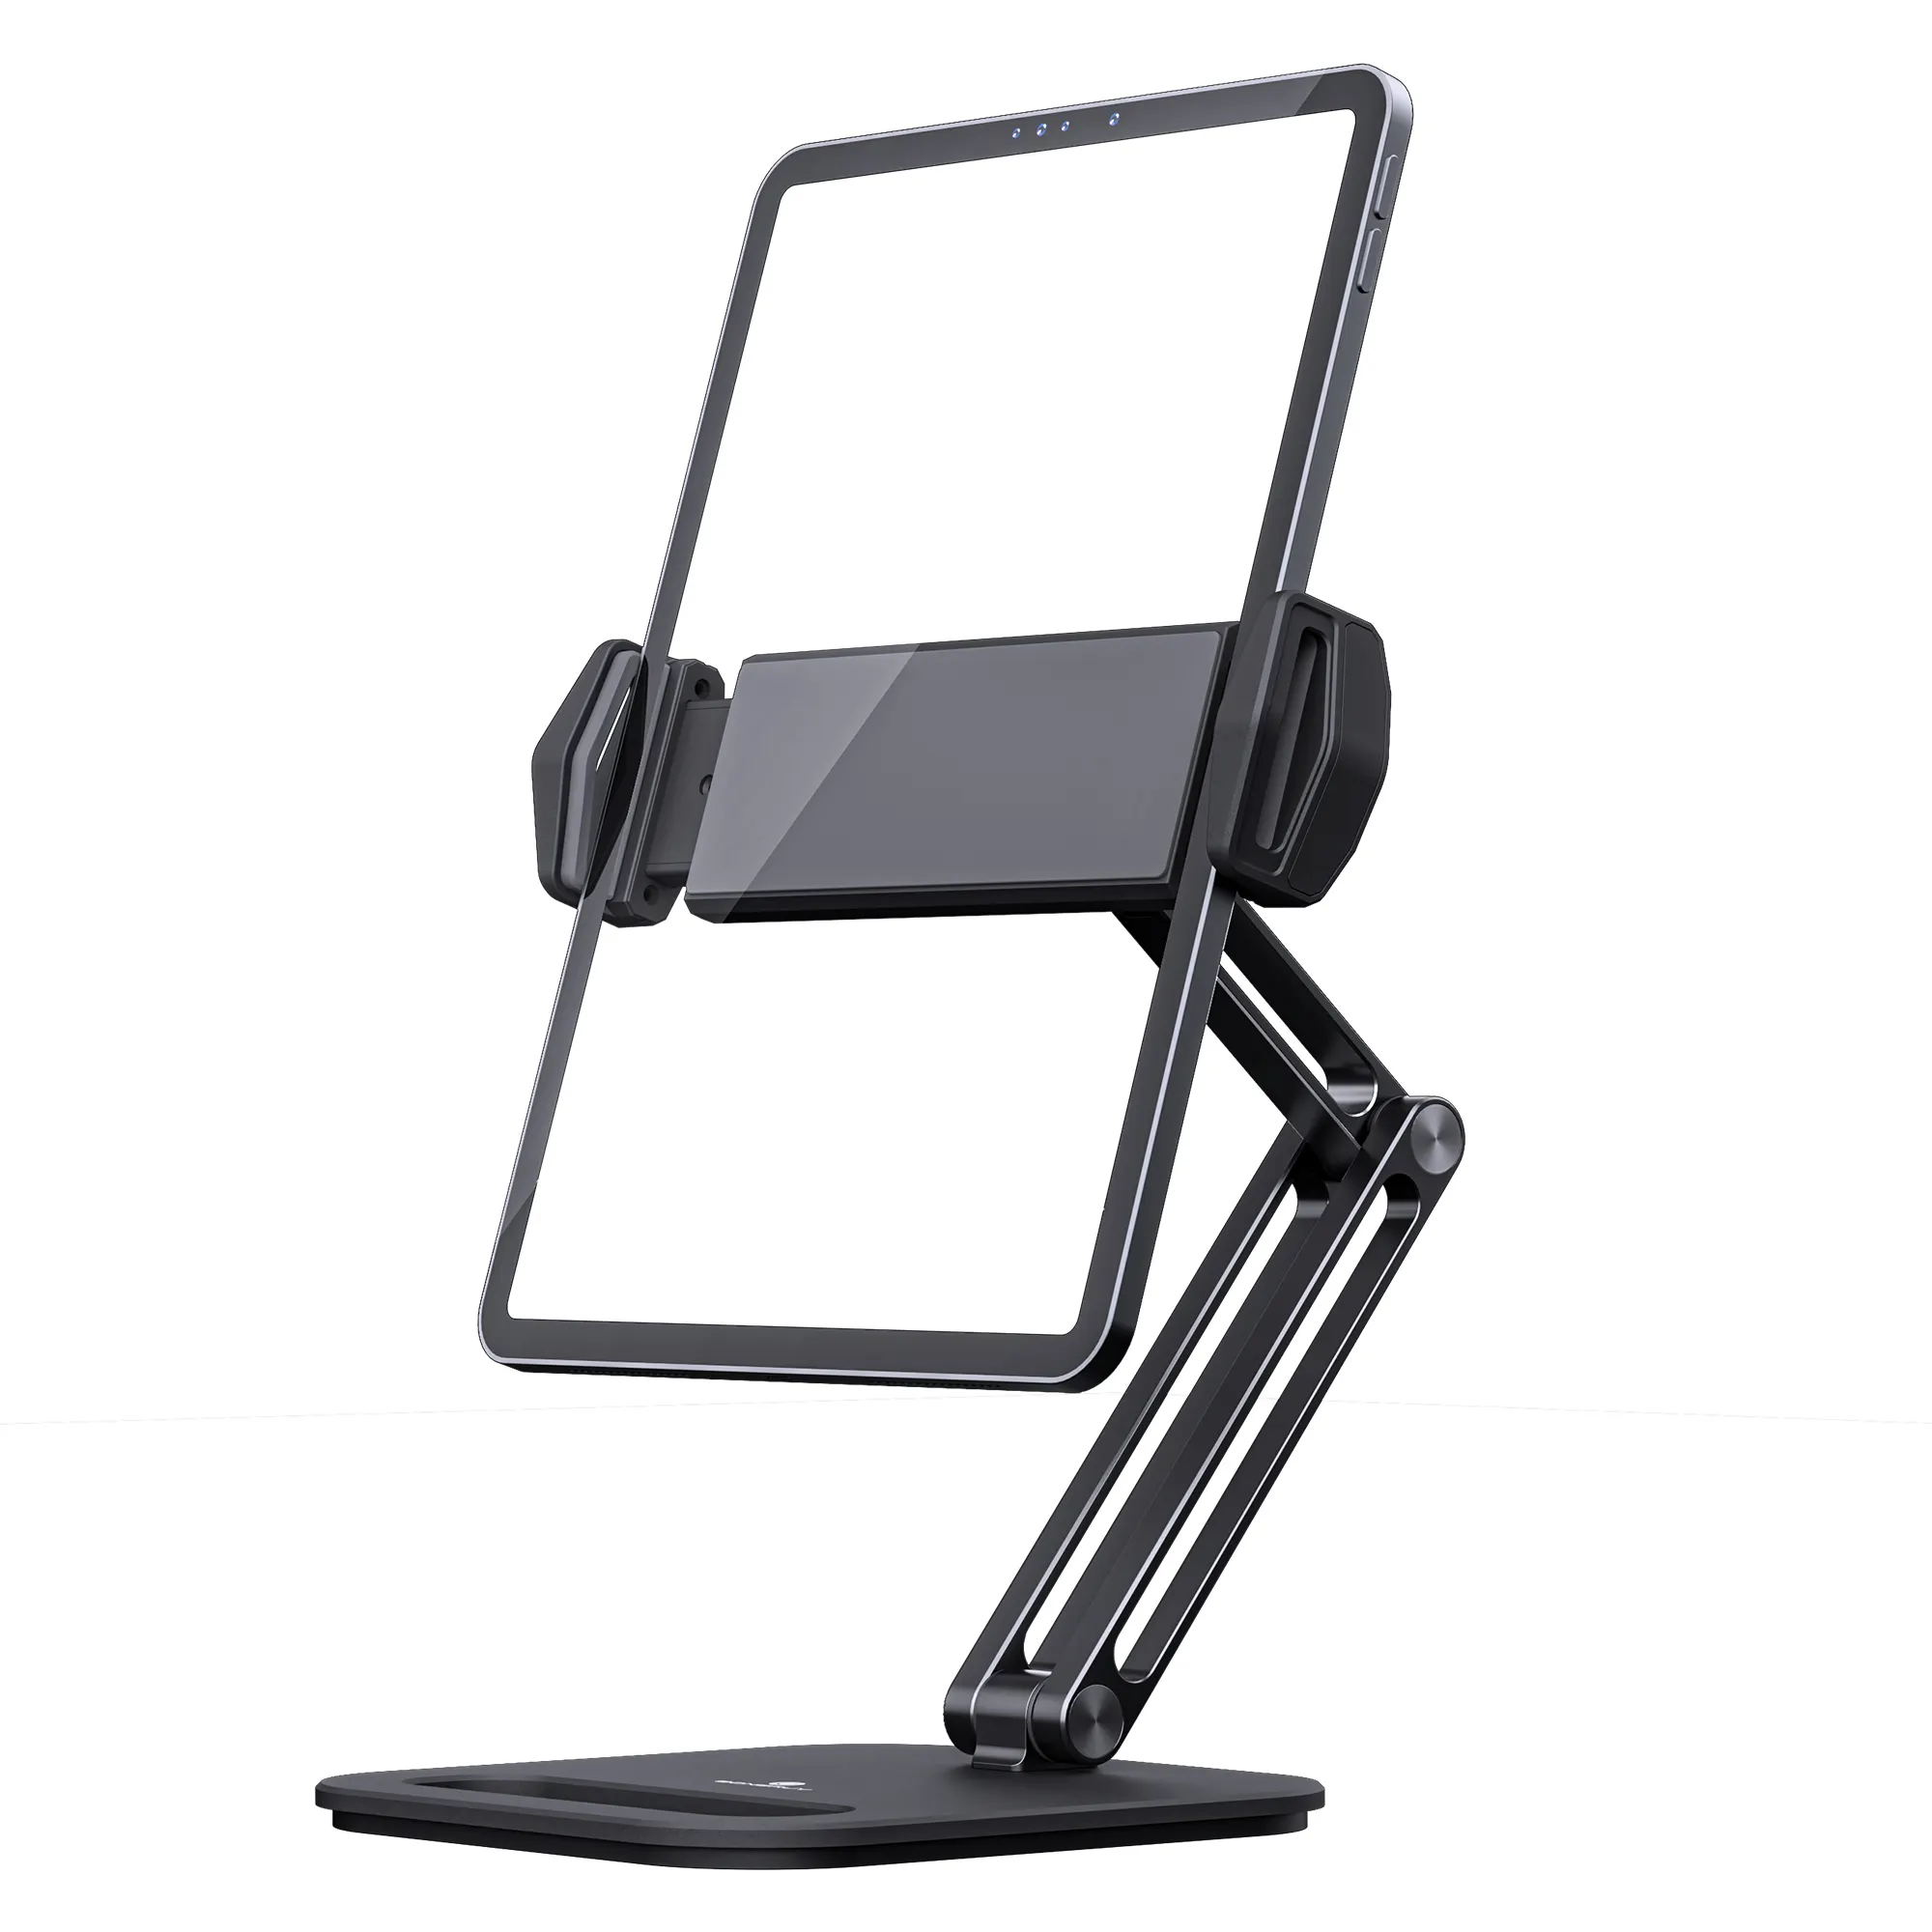 Boneruy suporte giratório para tablet, suporte ajustável de liga de alumínio para celular ipad